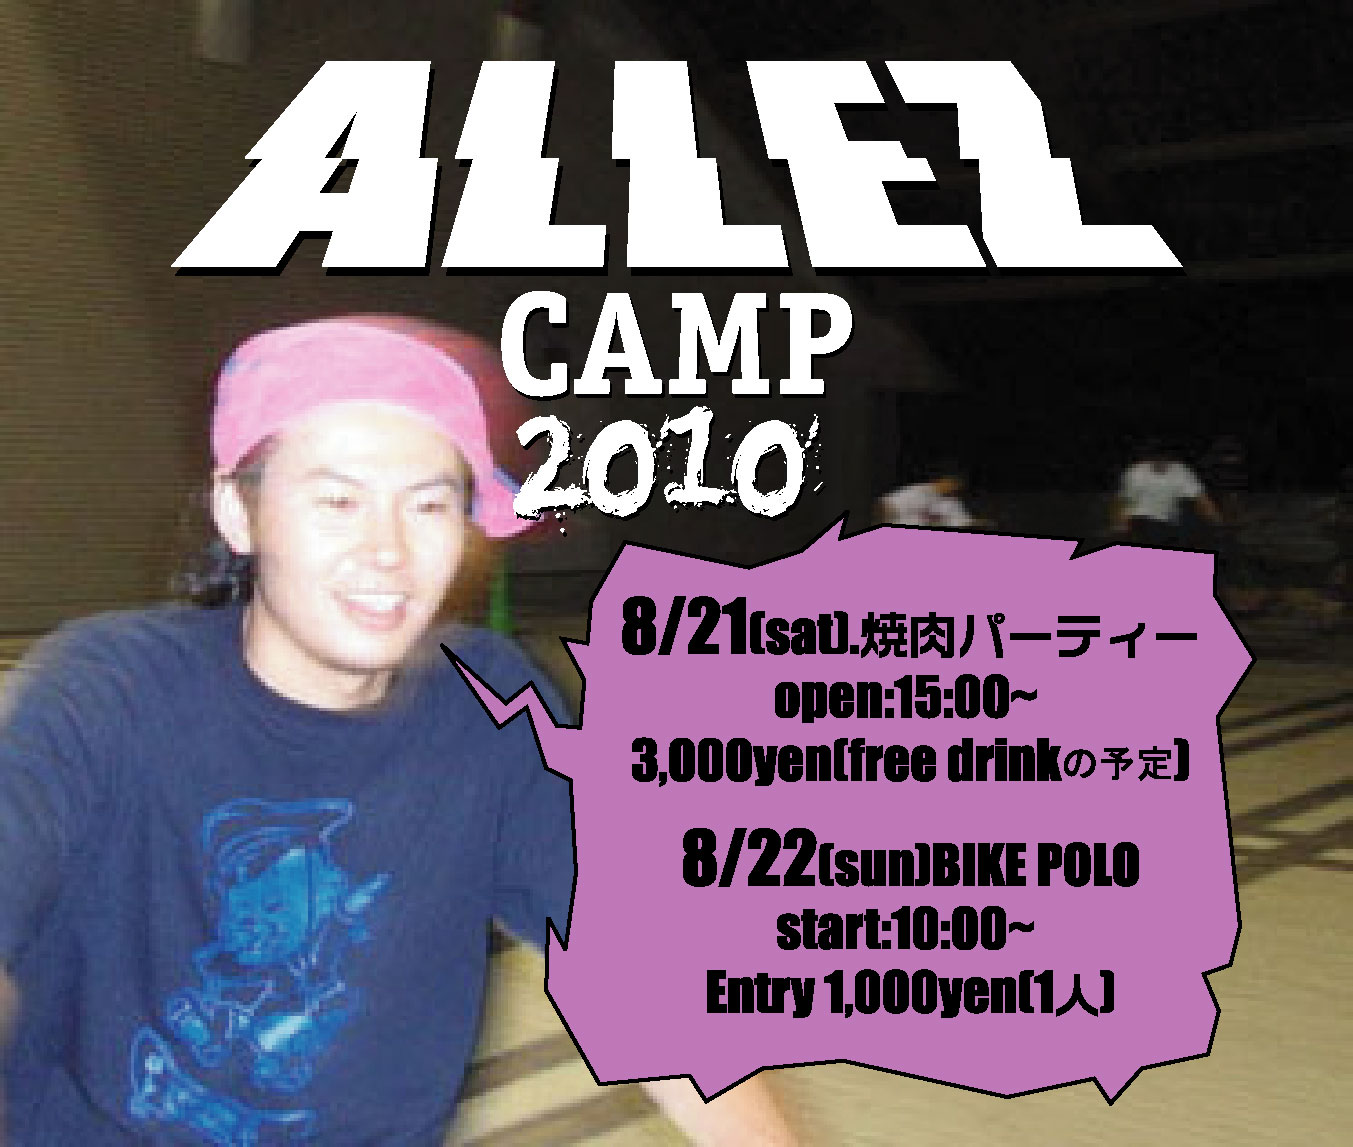 ALLEZ CAMP